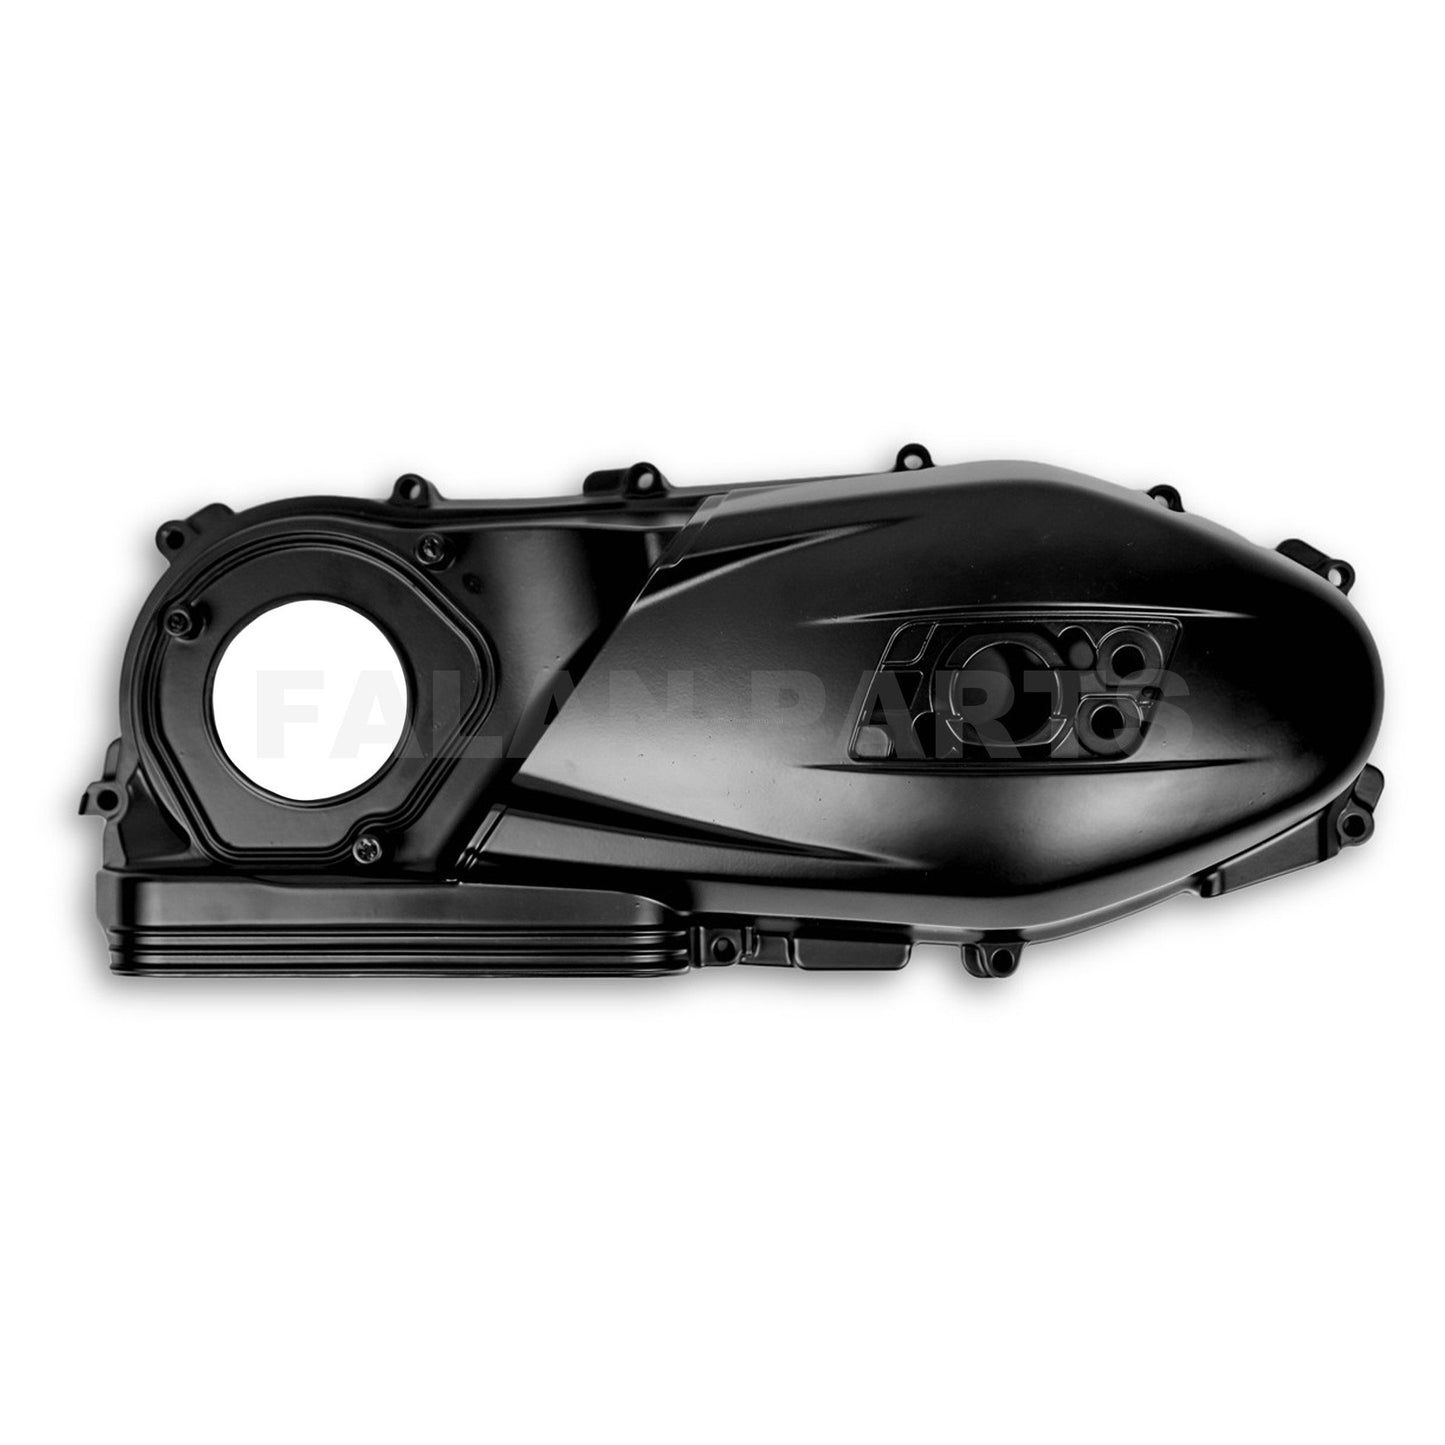 Crankcase/Vario Cover | Vespa Vespa Primavera/Sprint/GTS Models 125/150cc Falan Parts 129.95 Falan Parts